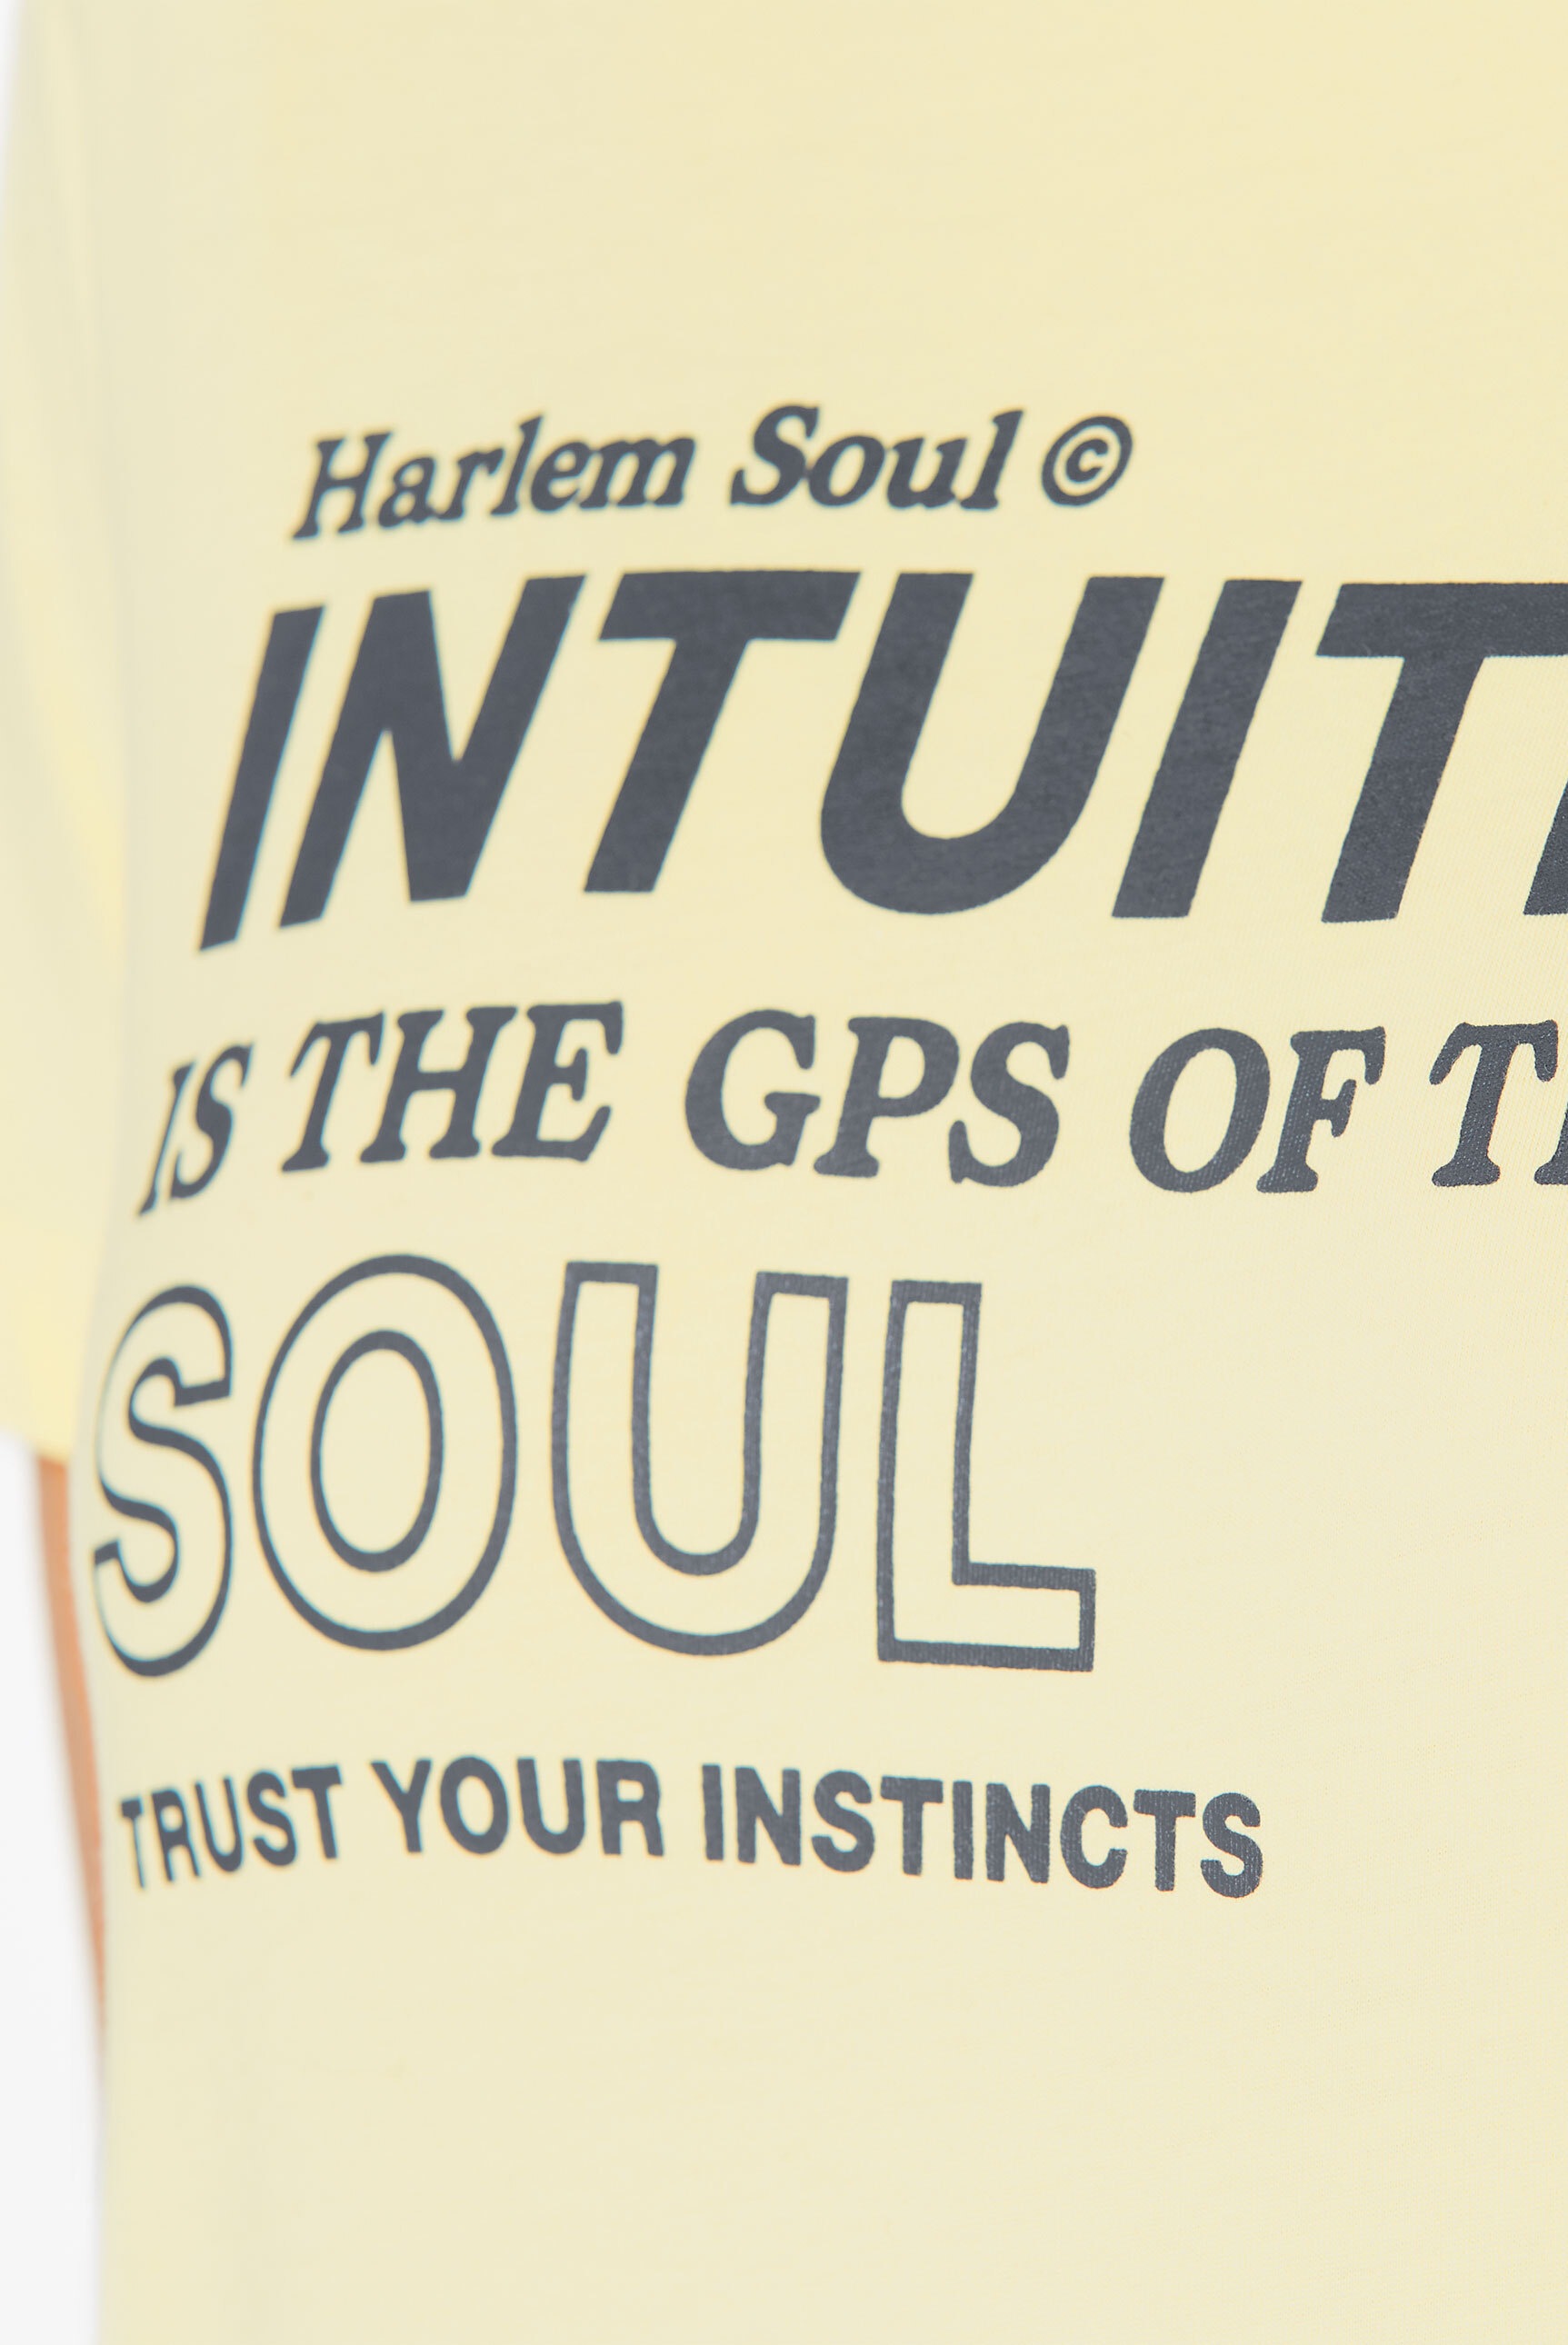 Harlem Soul Rundhalsshirt, aus Bio-Baumwolle